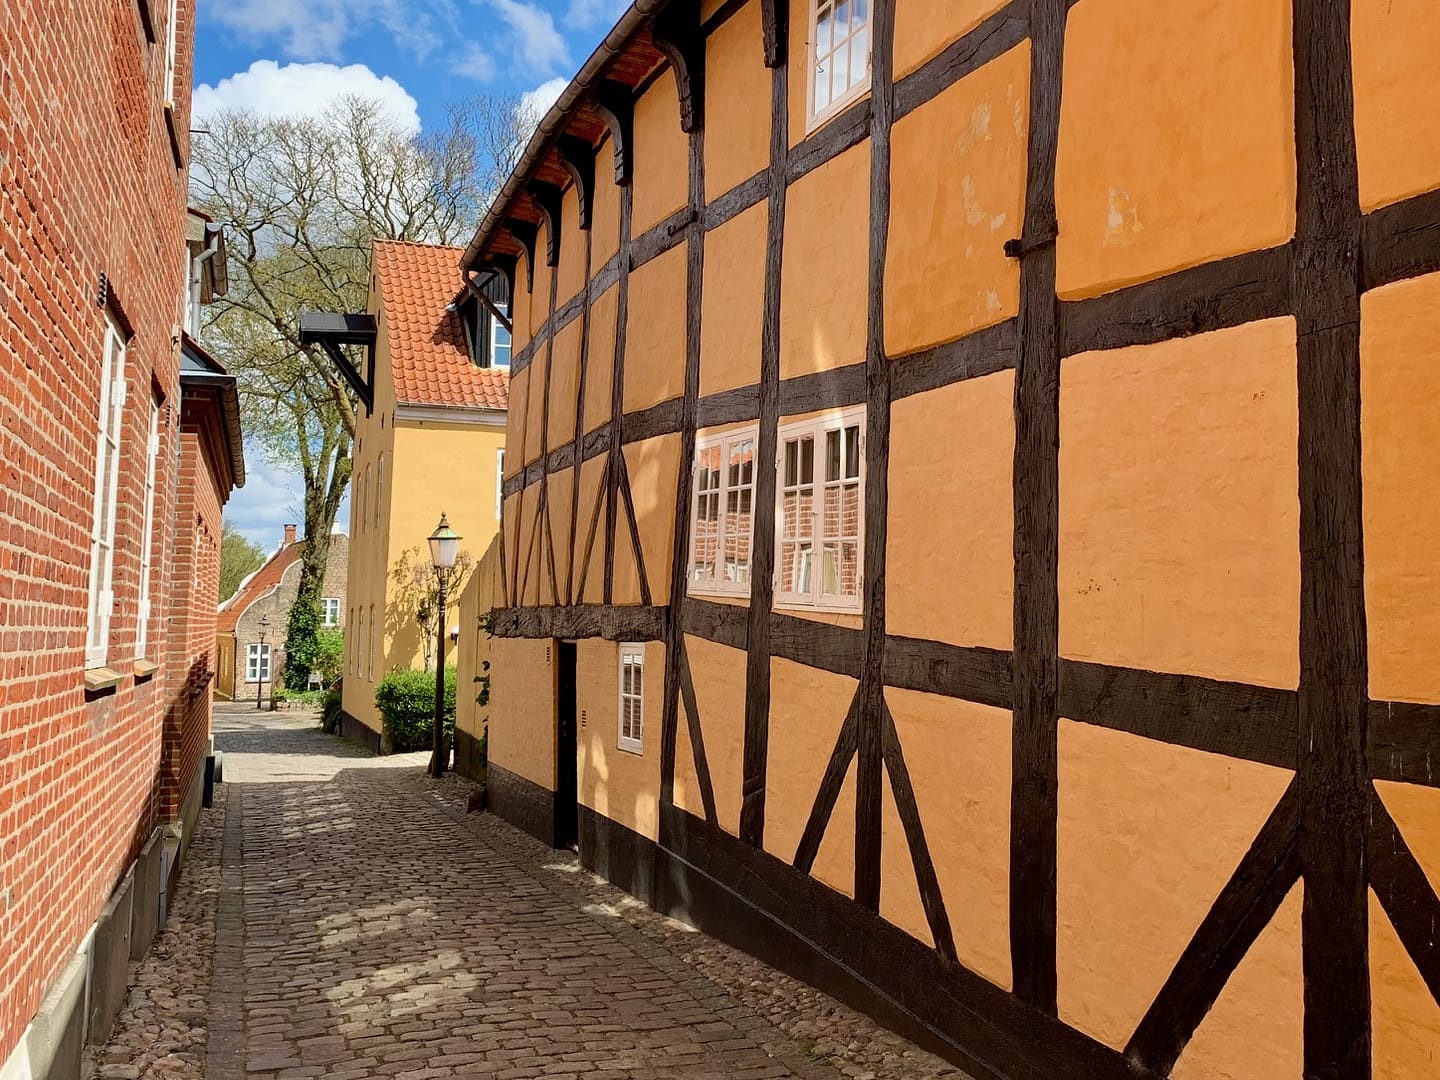 Wat doen in Ribe, het oudste stadje van Scandinavië